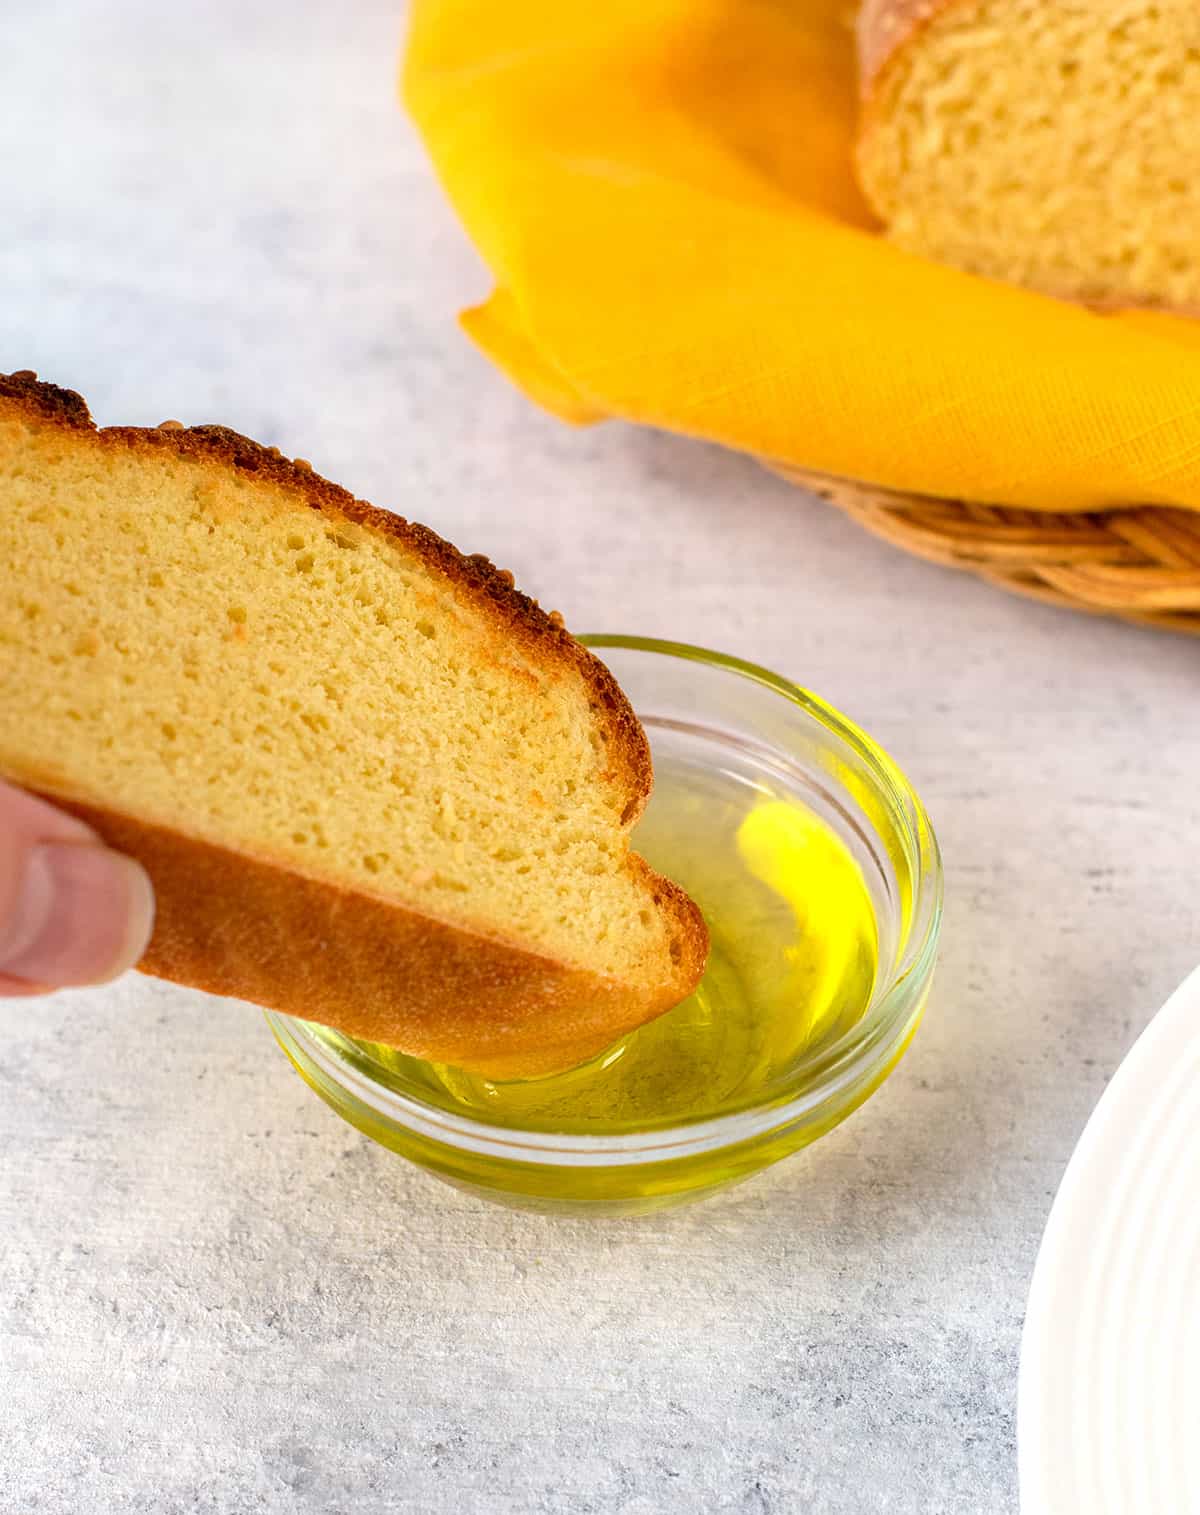 slice of italian semolina bread dipped in bowl of olive oil